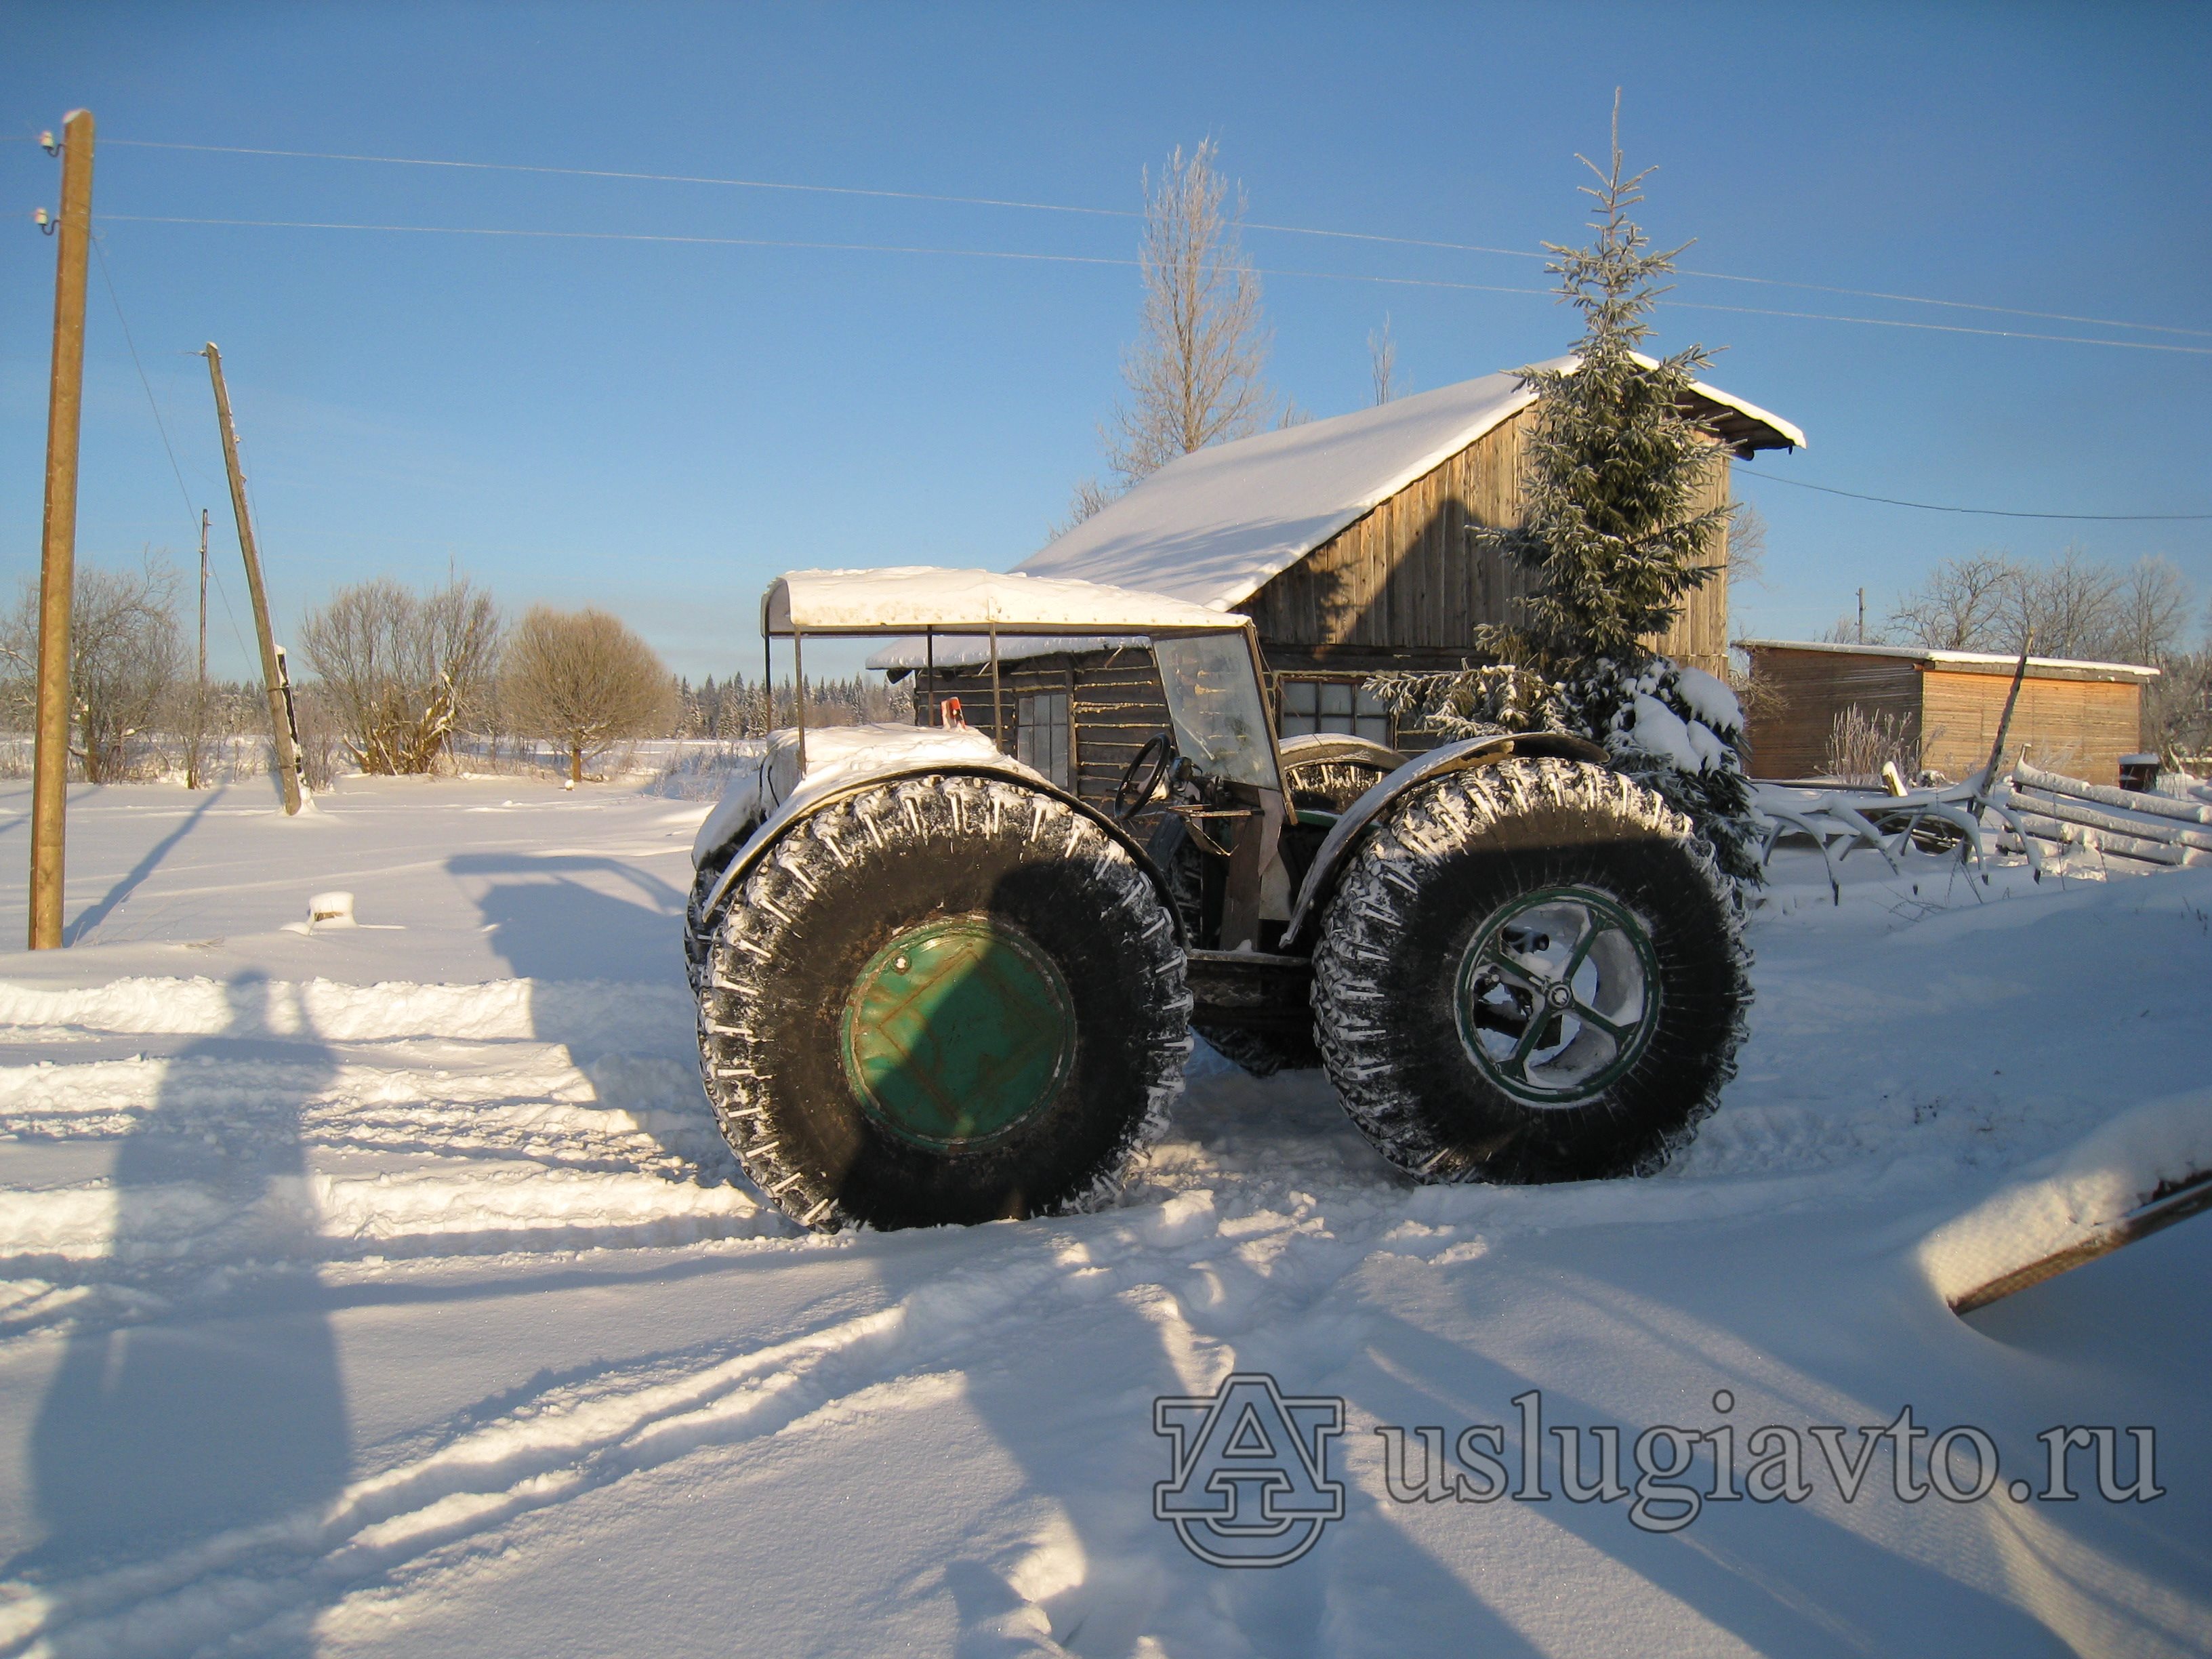 Самый продаваемый снегоболотоход ЗЭТ в Восточной Сибири. Самый доступный бигфут